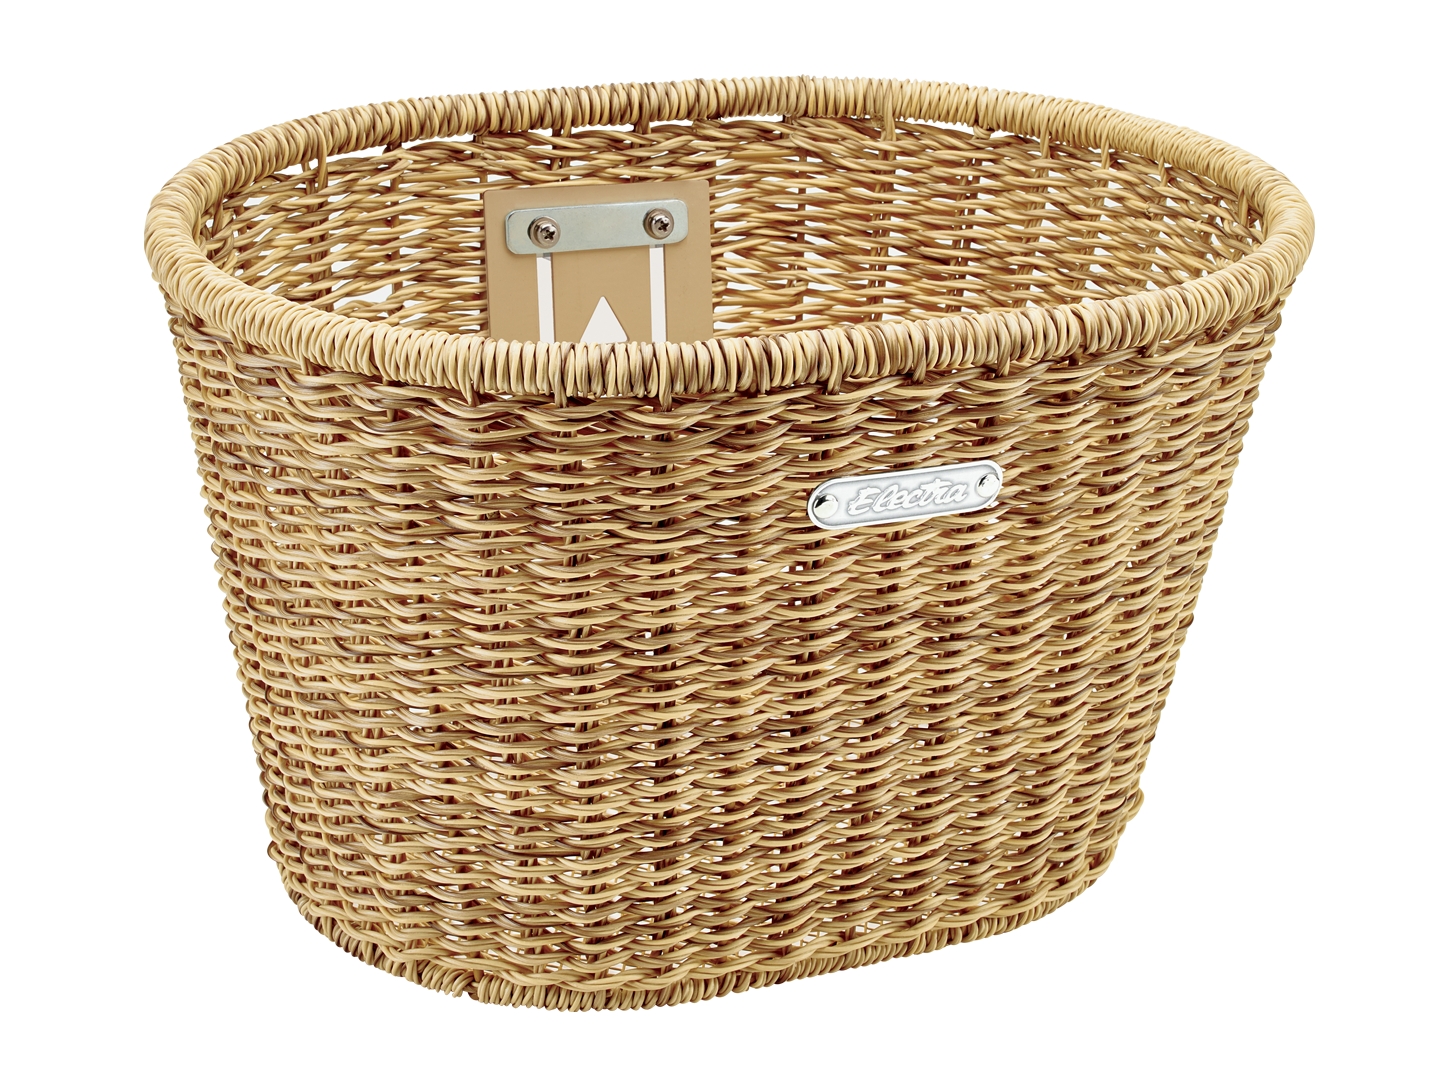 woven bicycle basket